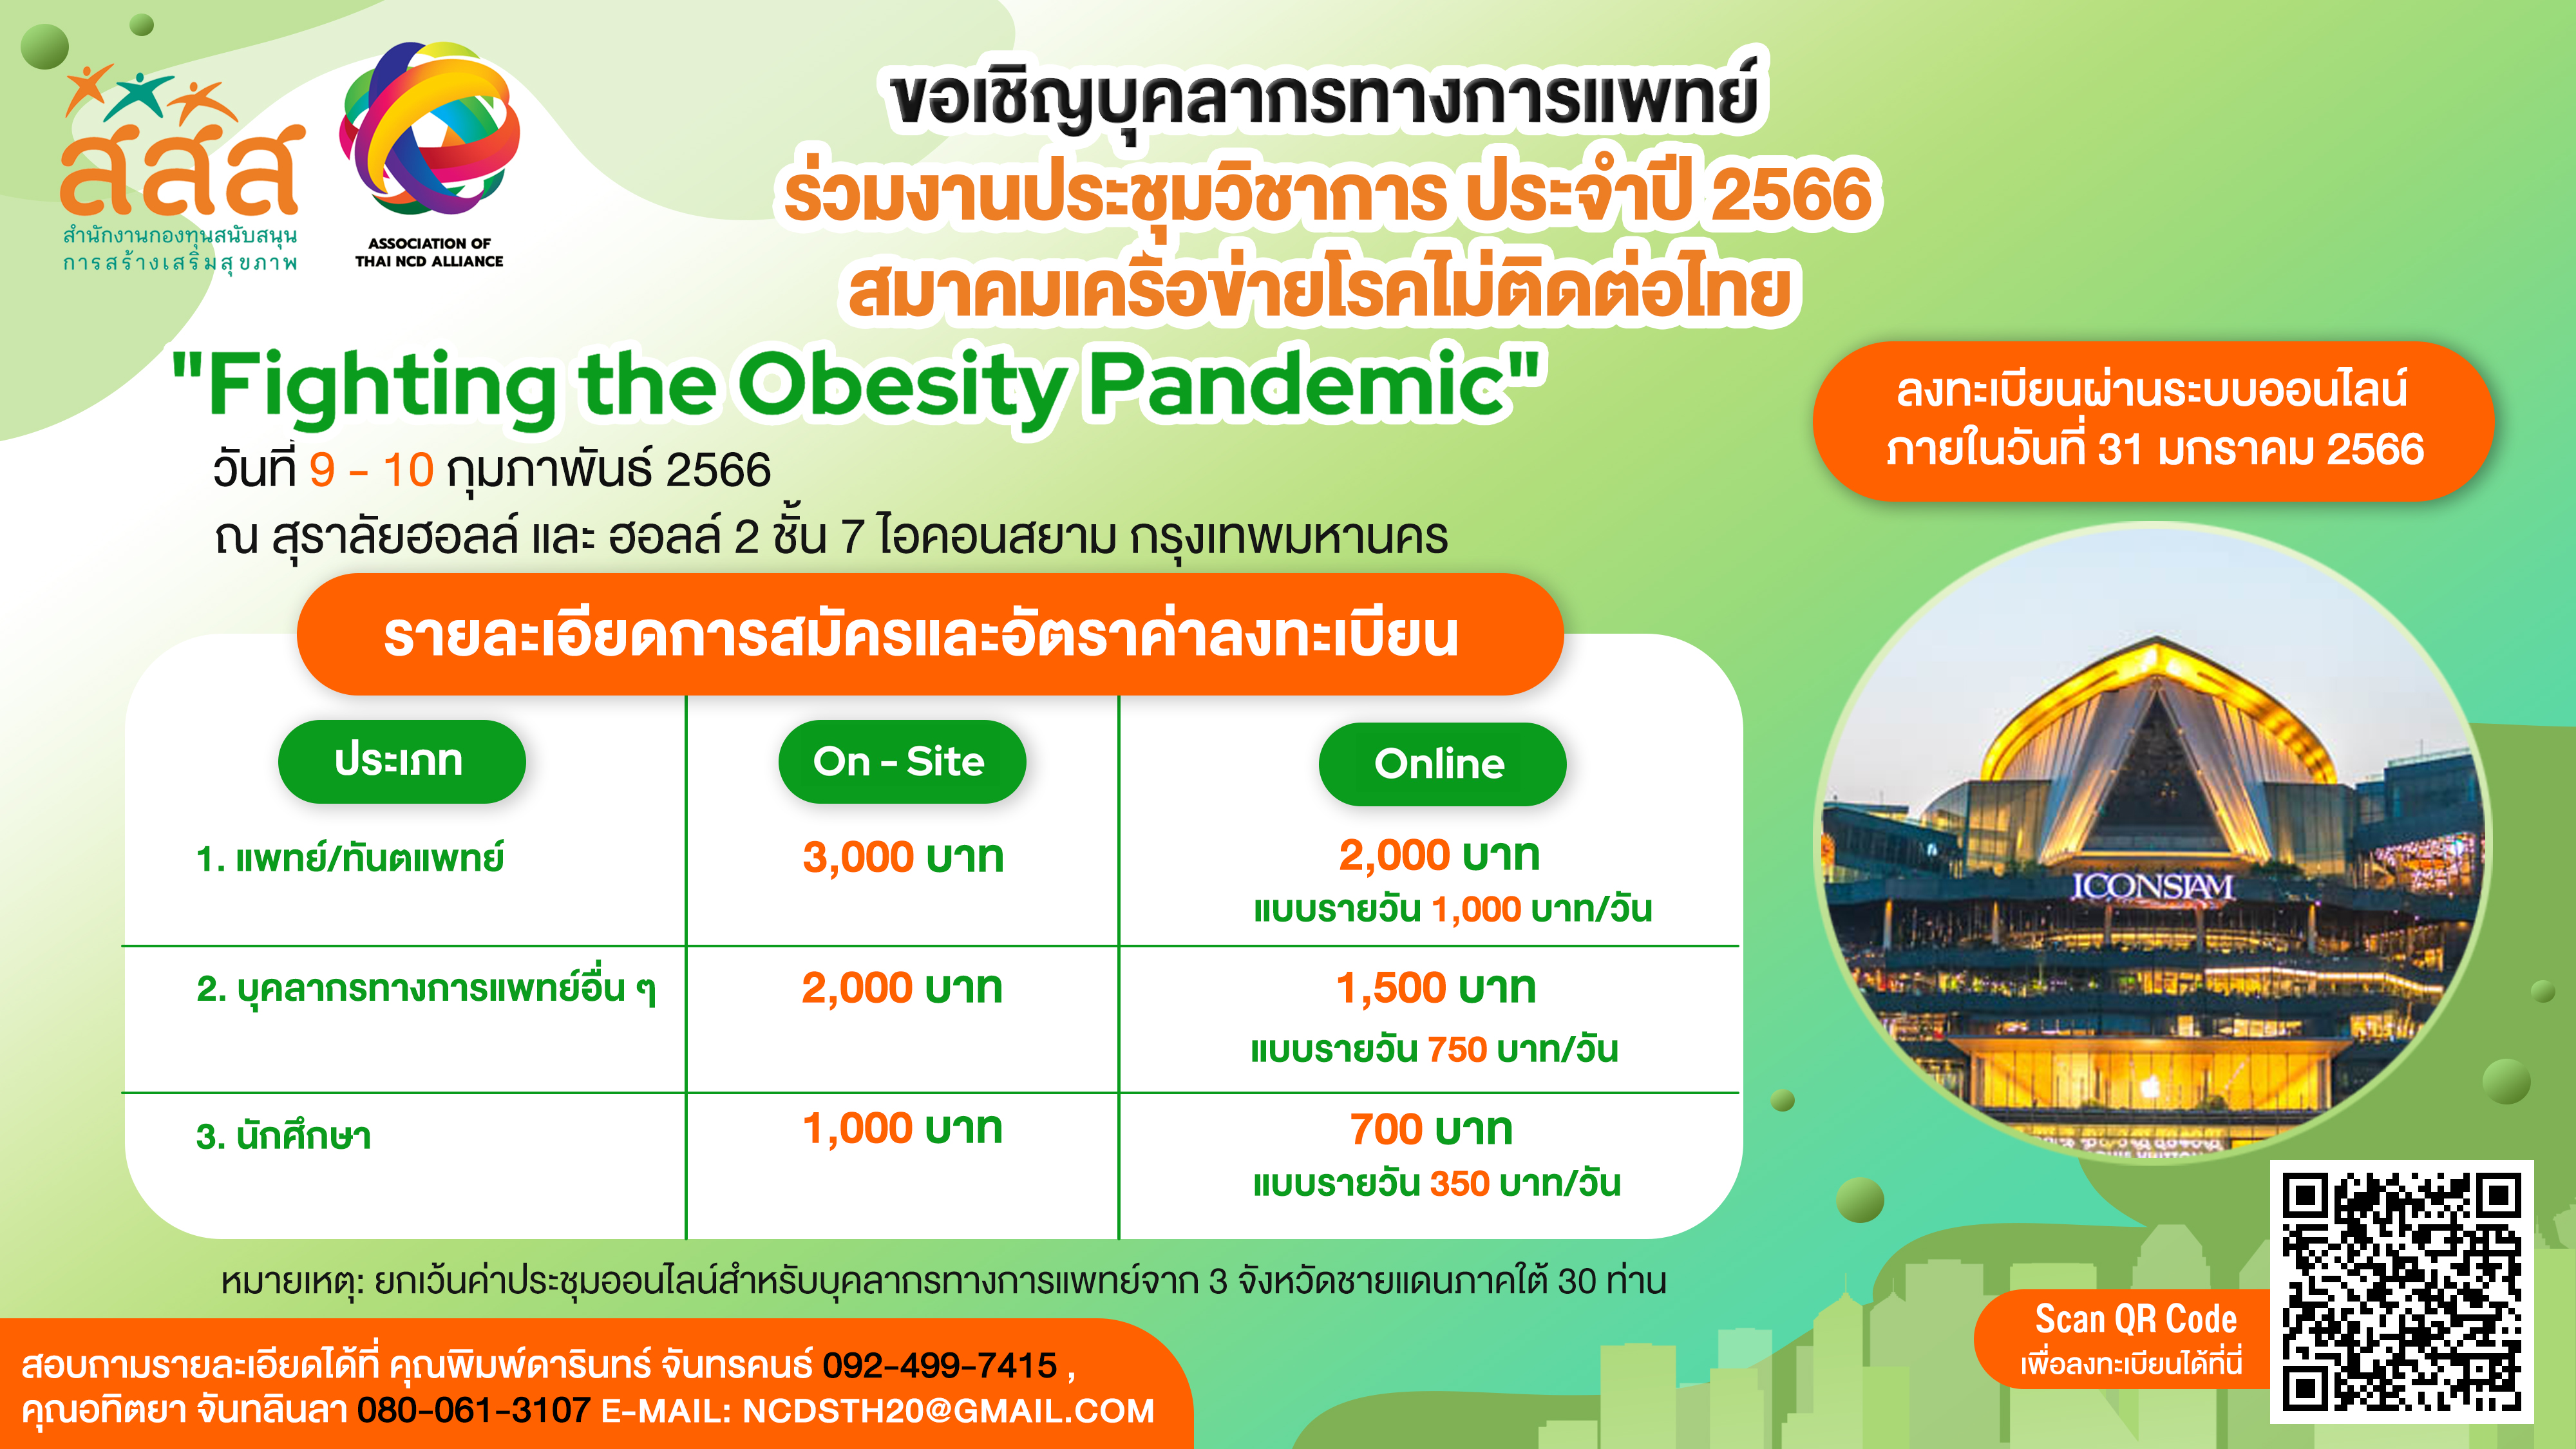 การประชุมวิชาการ สมาคมเครือข่ายโรคไม่ติดต่อไทย ประจำปี 2566 Thai NCD Alliance 2023 